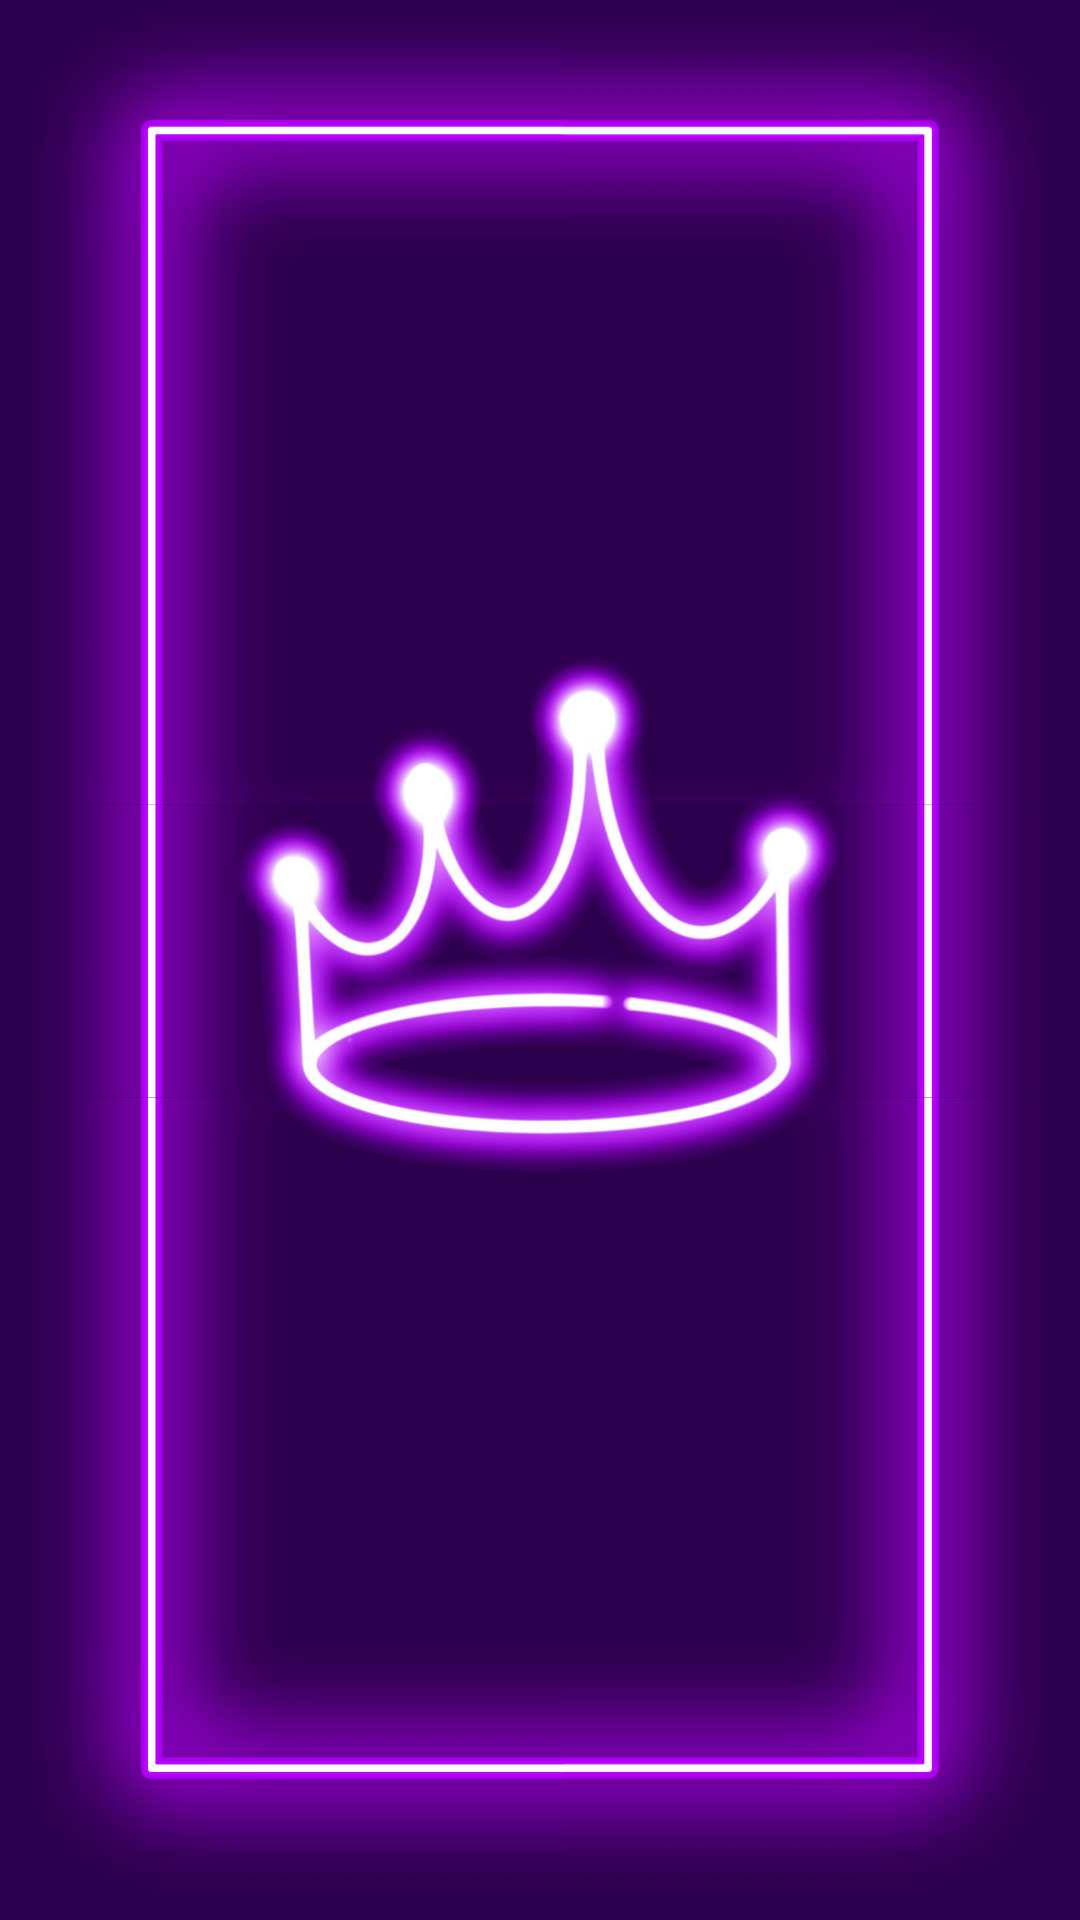 100+] Neon Purple Iphone Wallpapers | Wallpapers.com